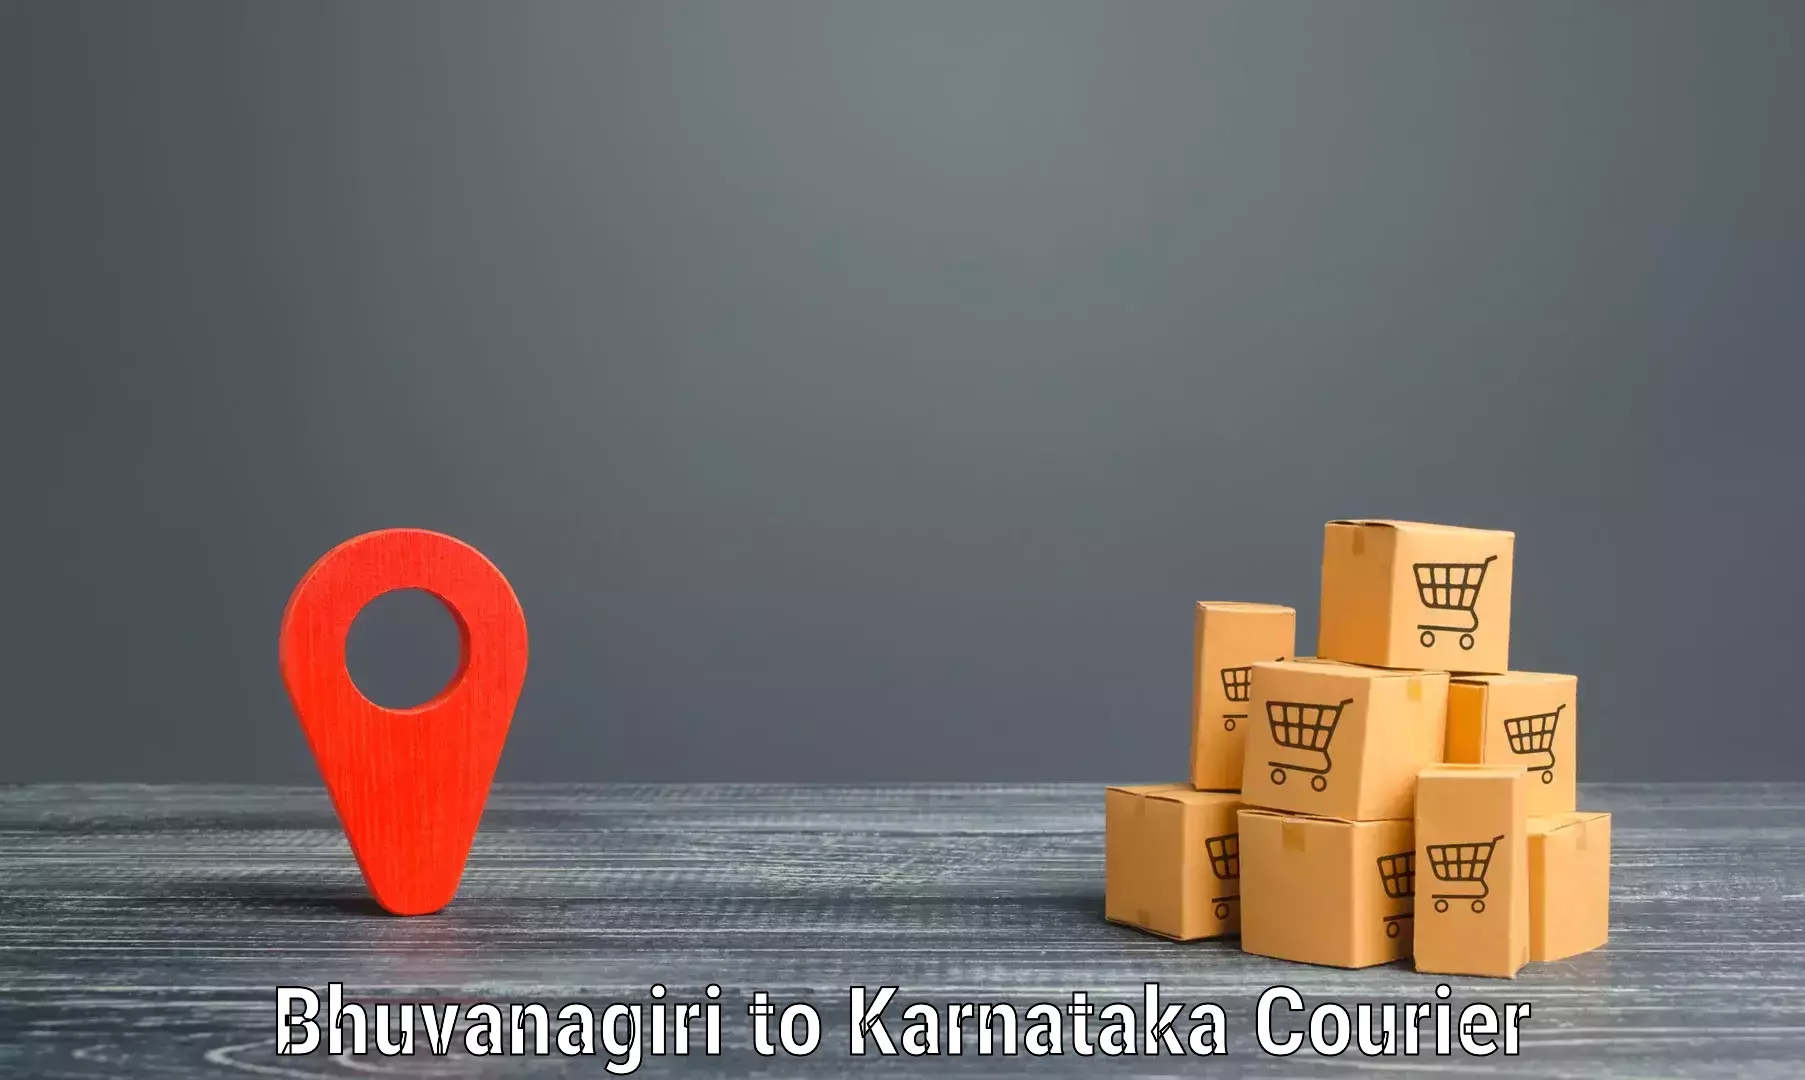 Seamless shipping experience Bhuvanagiri to Chikkamagalur